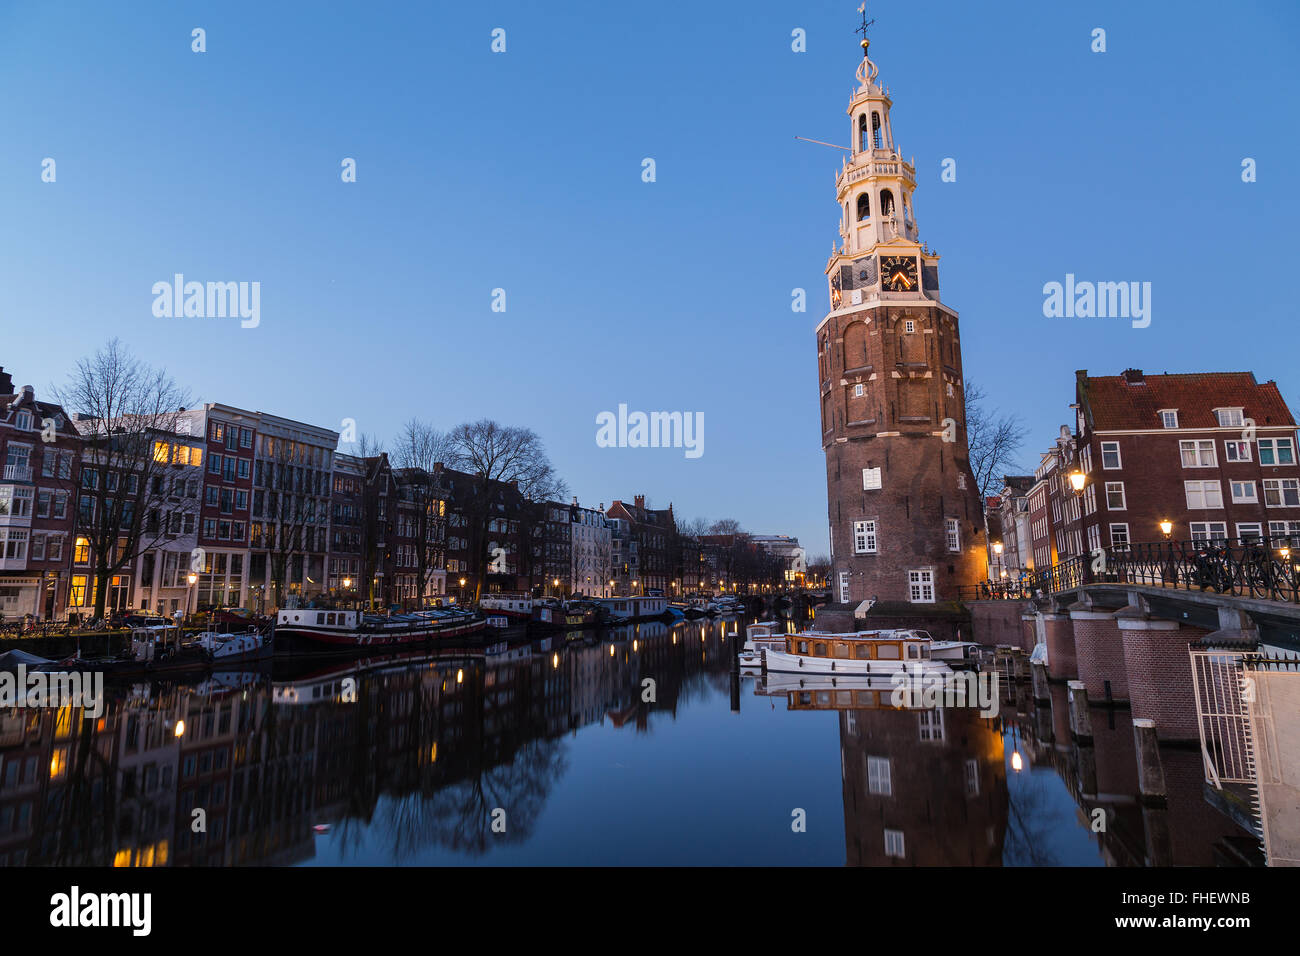 Ein Blick entlang der Oudeschans Kanal in Richtung der Montelbaansturm Tower in Amsterdam in der Dämmerung. Gebäude, Boote und Reflexionen Stockfoto